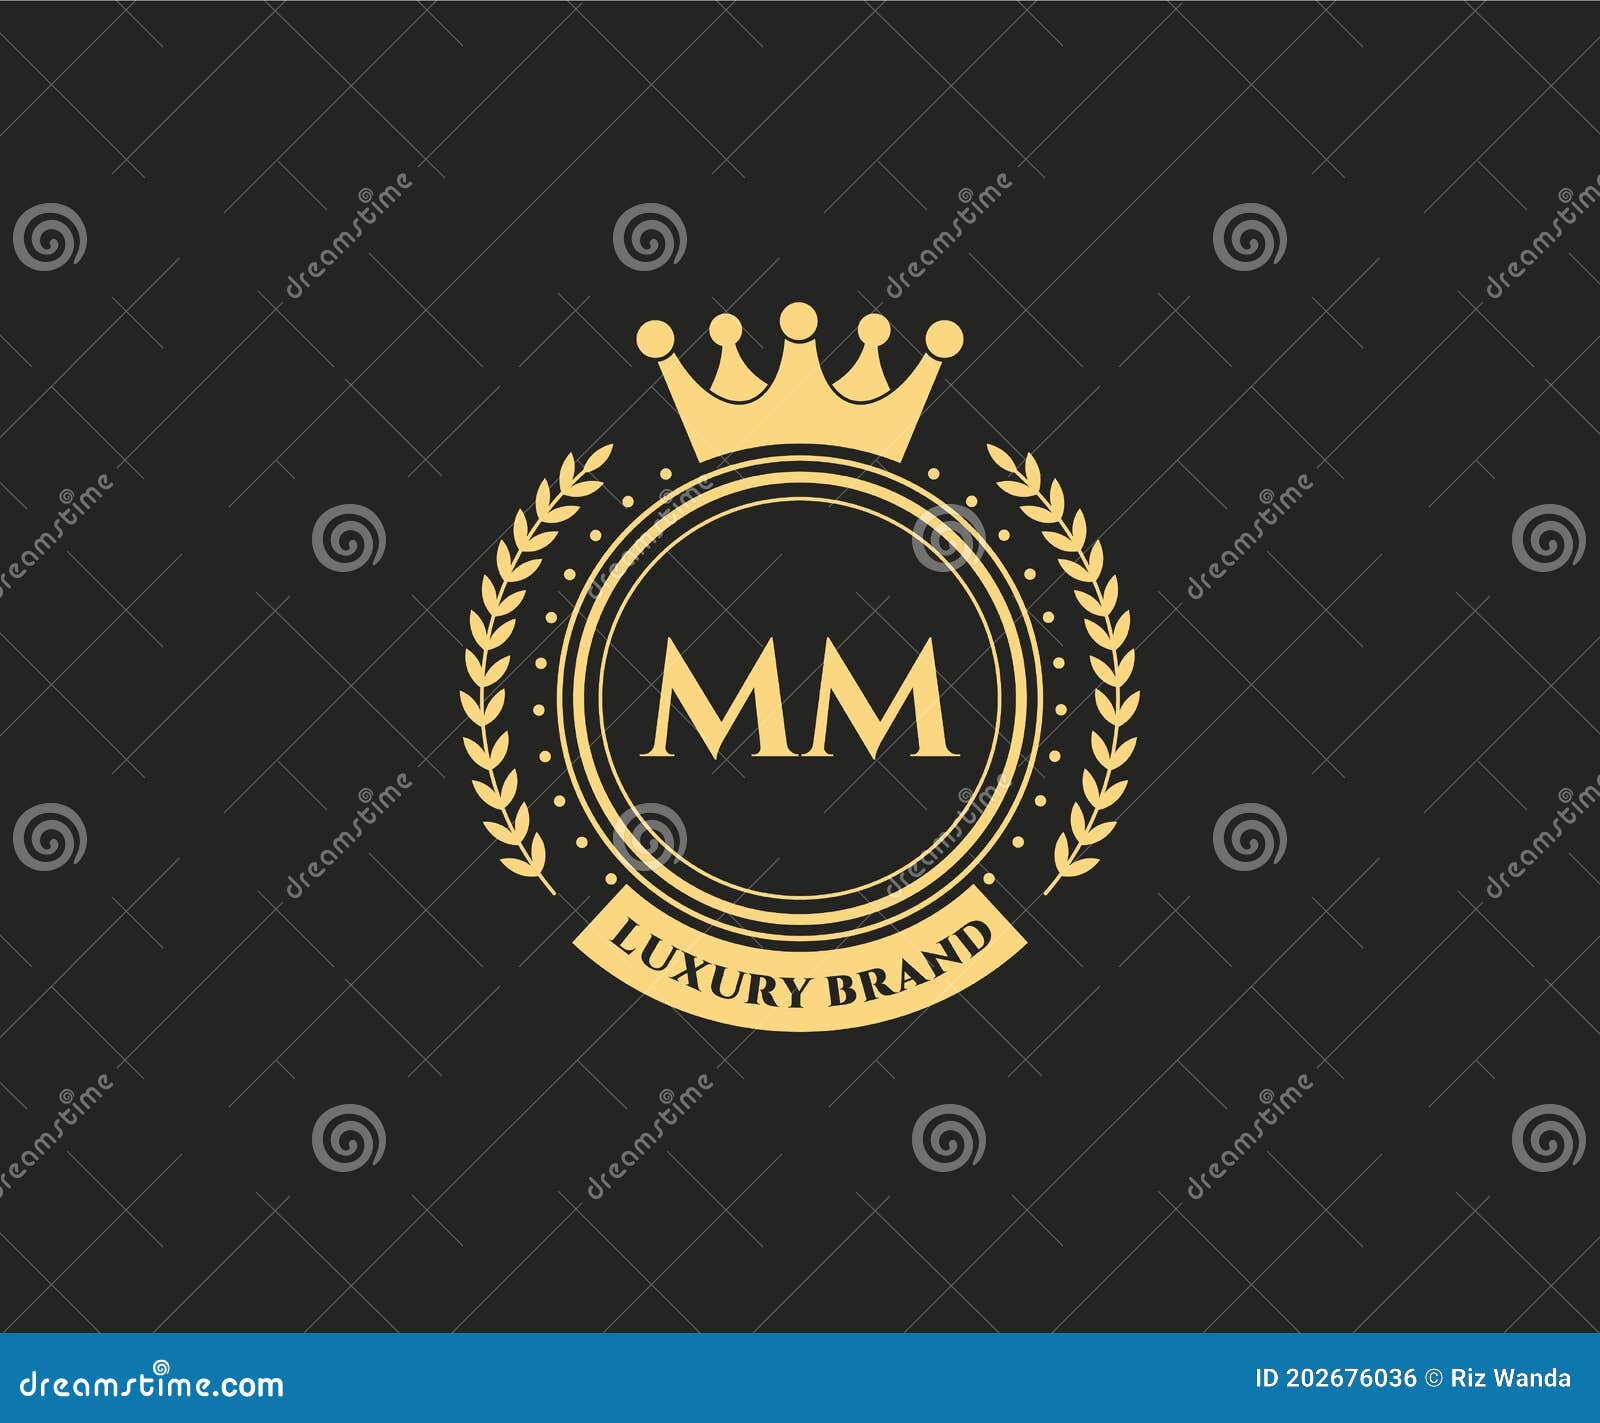 Mm Vintage Logo Stock Illustrations – 393 Mm Vintage Logo Stock  Illustrations, Vectors & Clipart - Dreamstime